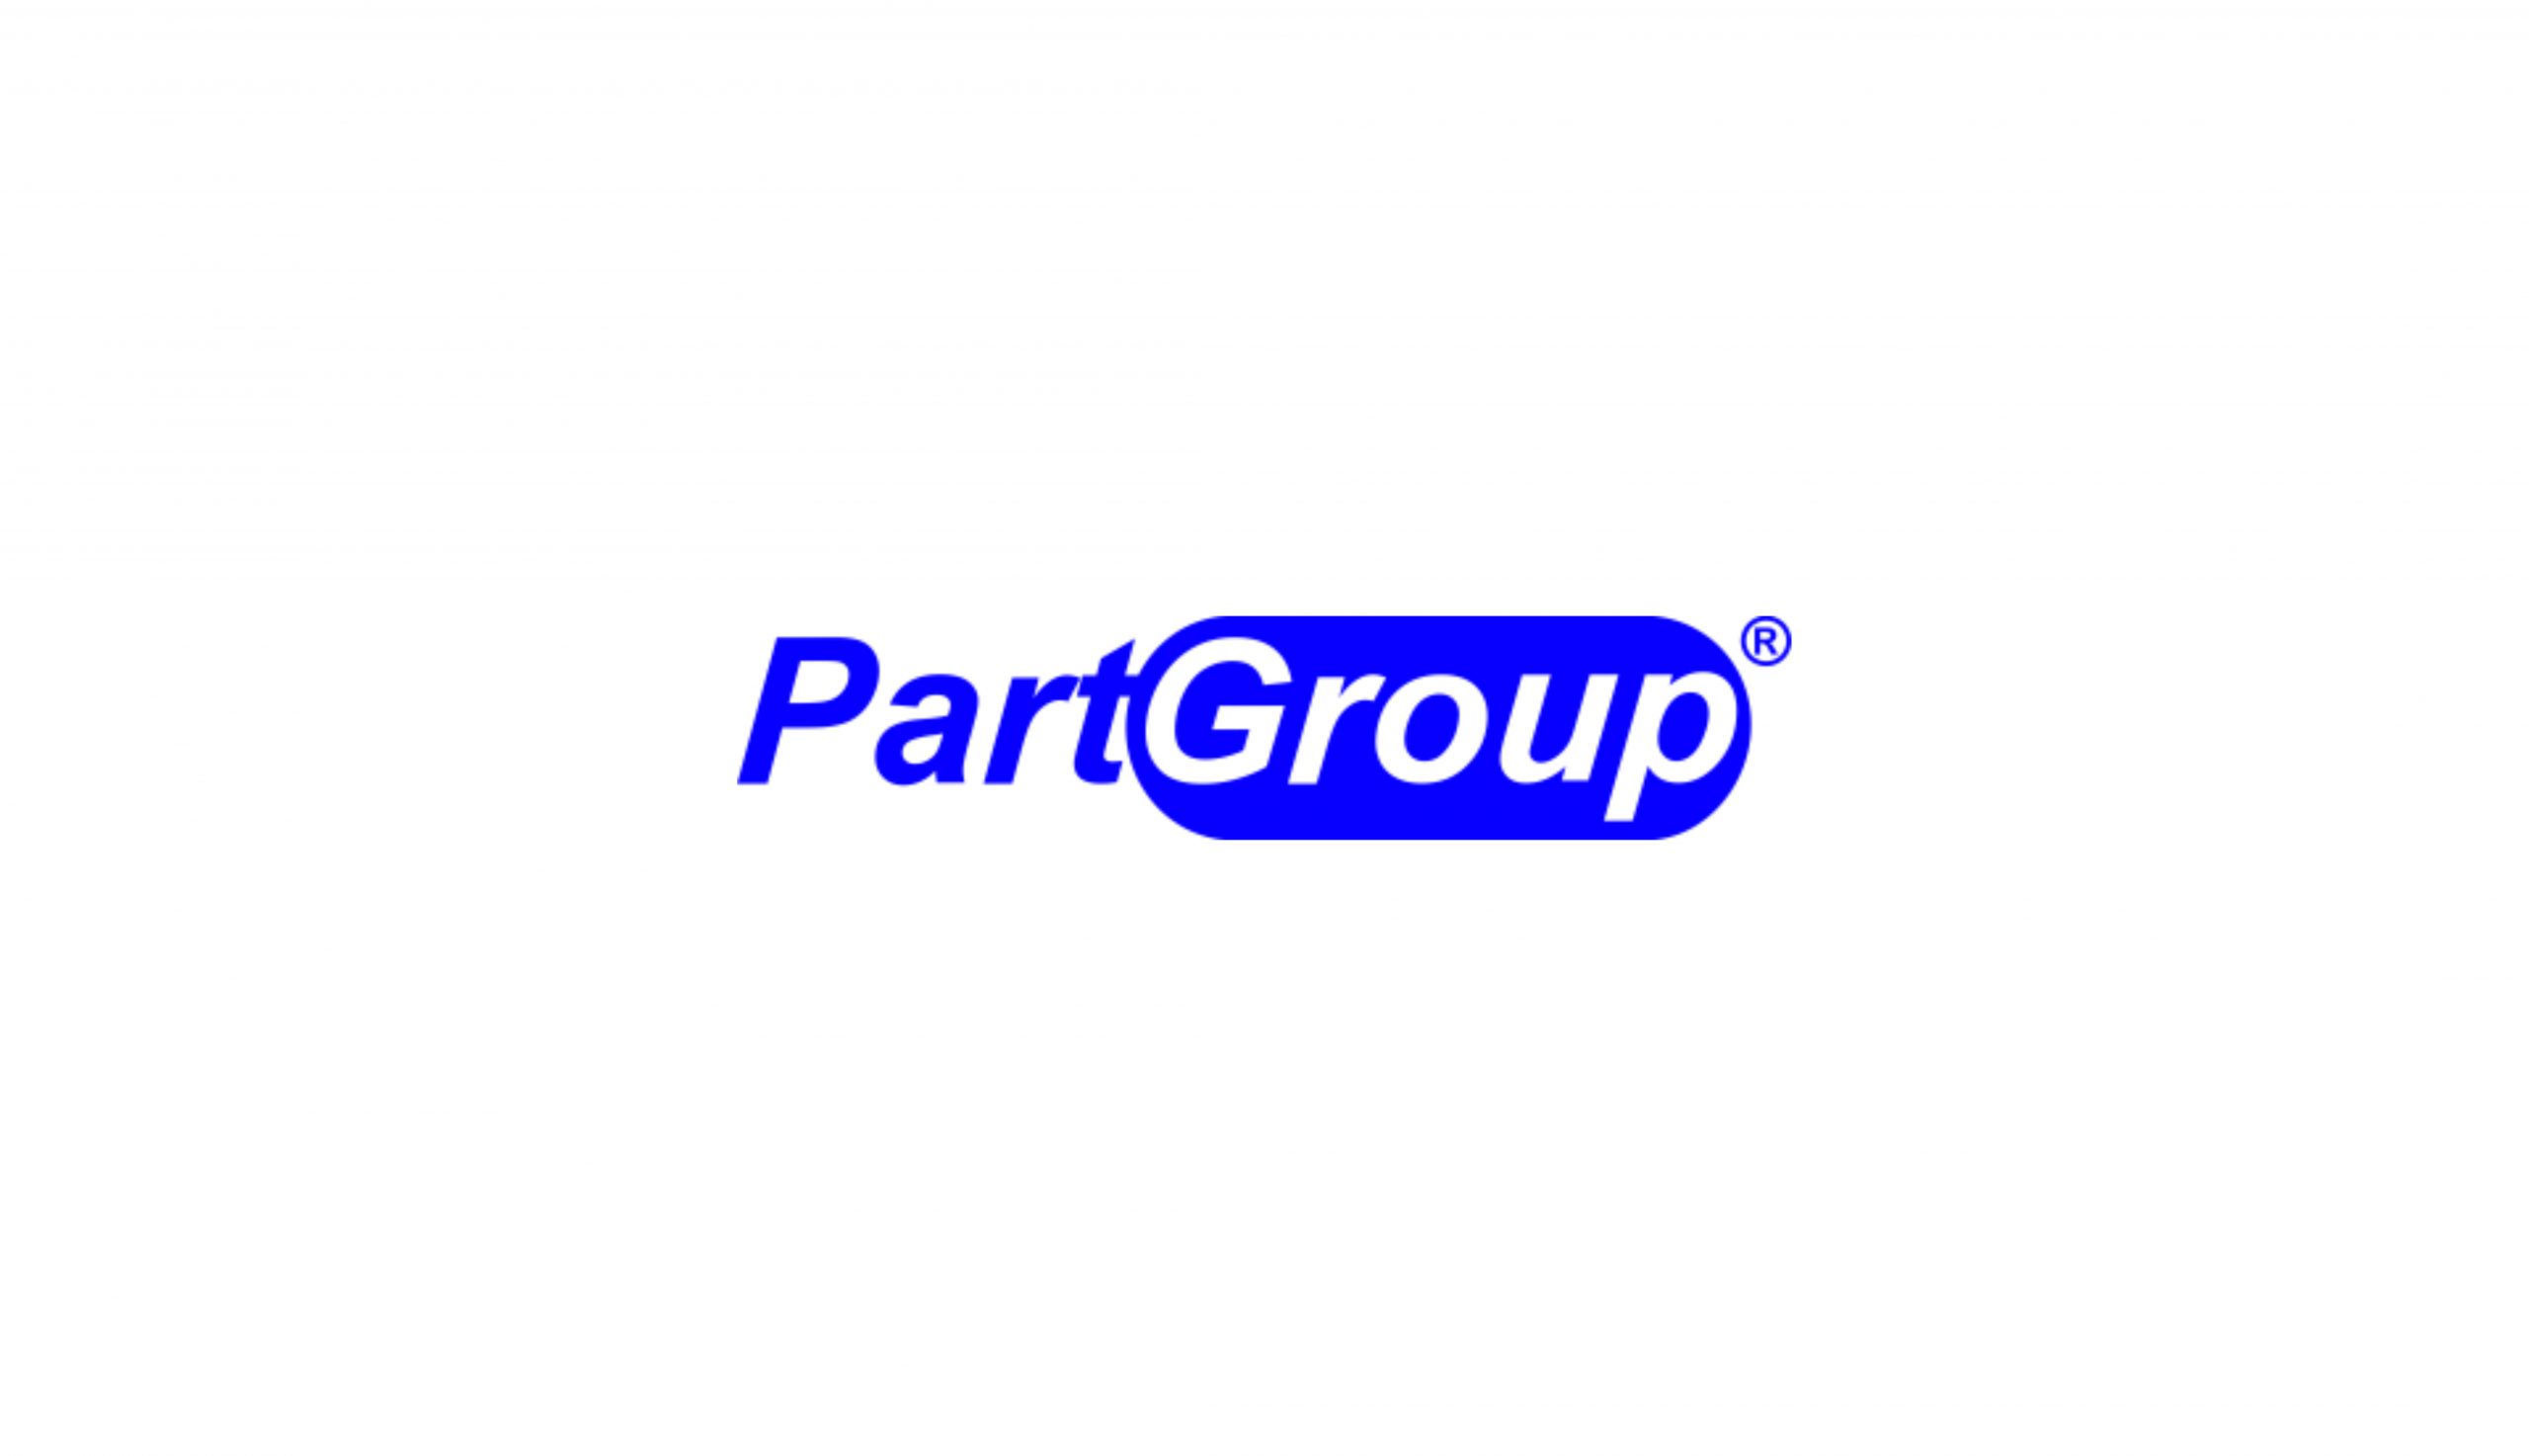 Wyjazd integracyjny PartGroup – 29.02-02.03.2020 r.